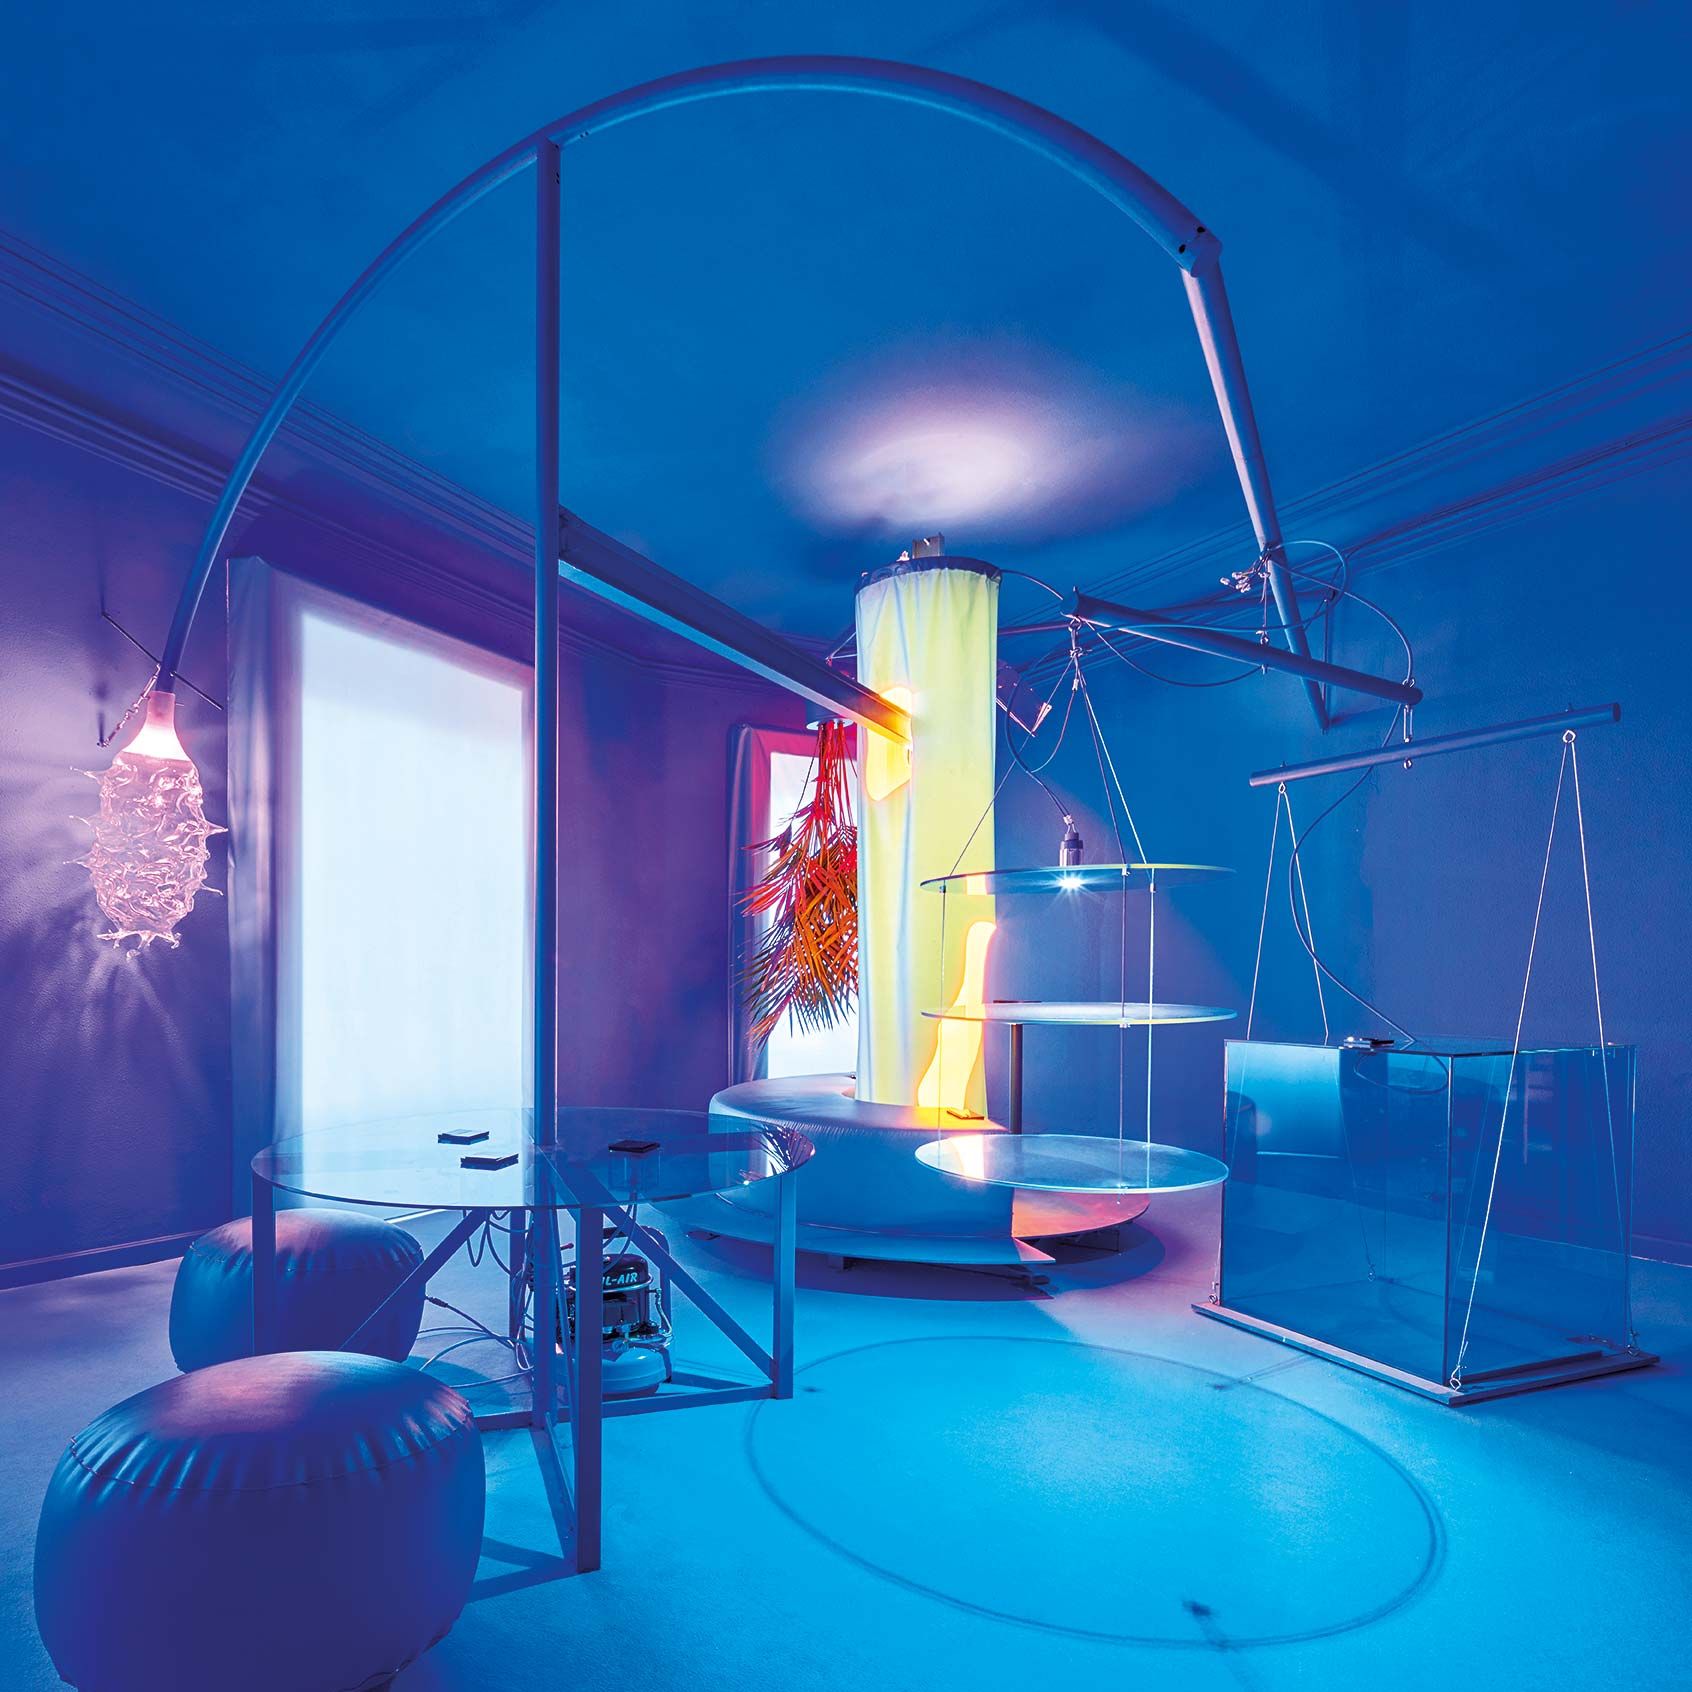 En la instalación de luz del artista y diseñador Guillermo Santomá, para Simon en Casa Decor, interactuamos con el espacio, modificando su iluminación y la posición de sus muebles a través de un mecanismo digital.